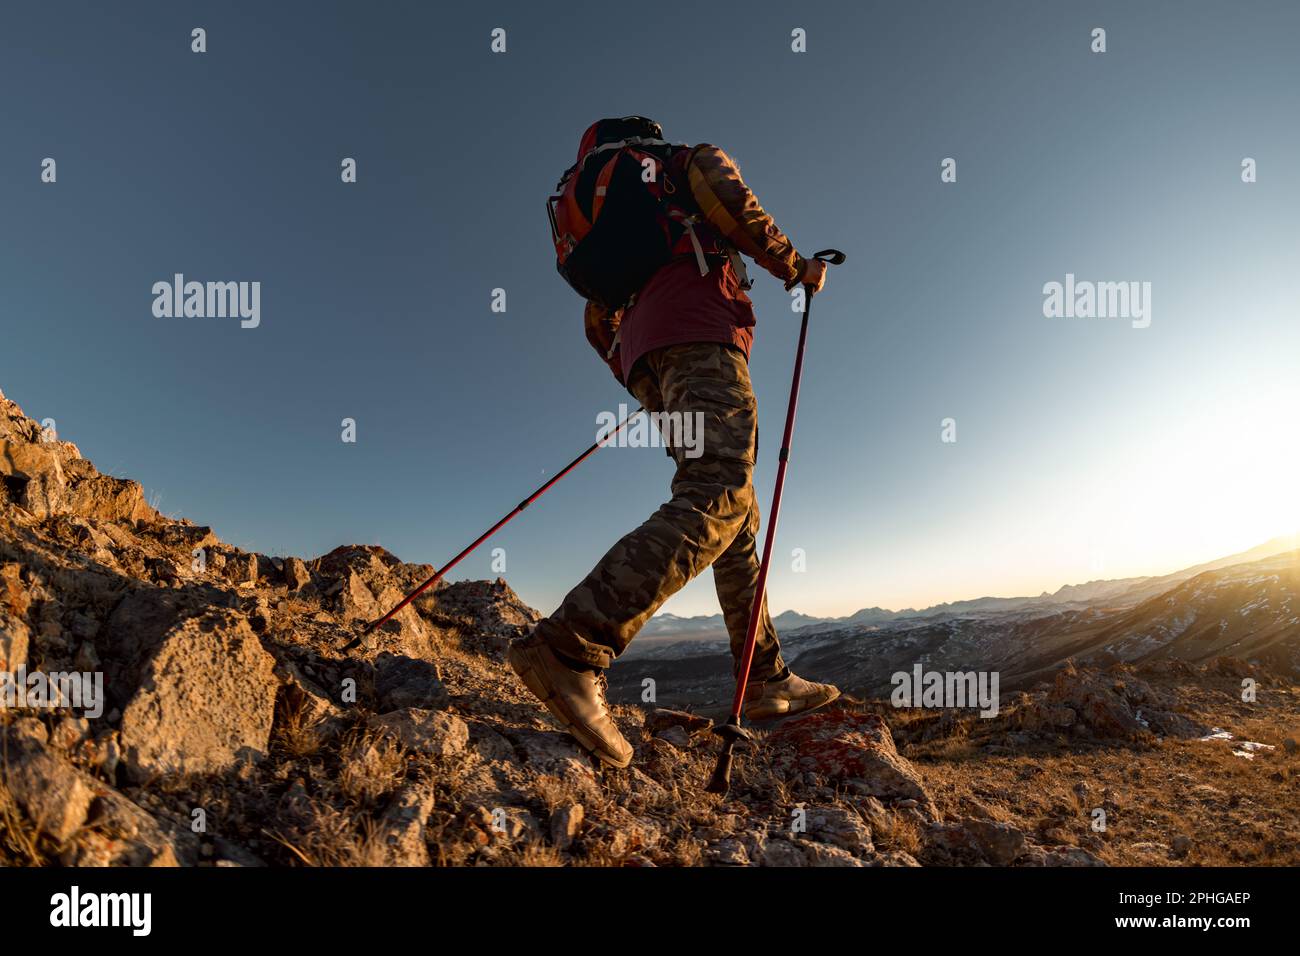 Randonnée avec sac à dos en montée dans les montagnes. Une silhouette touristique active s'accompagne de bâtons de randonnée au coucher du soleil Banque D'Images